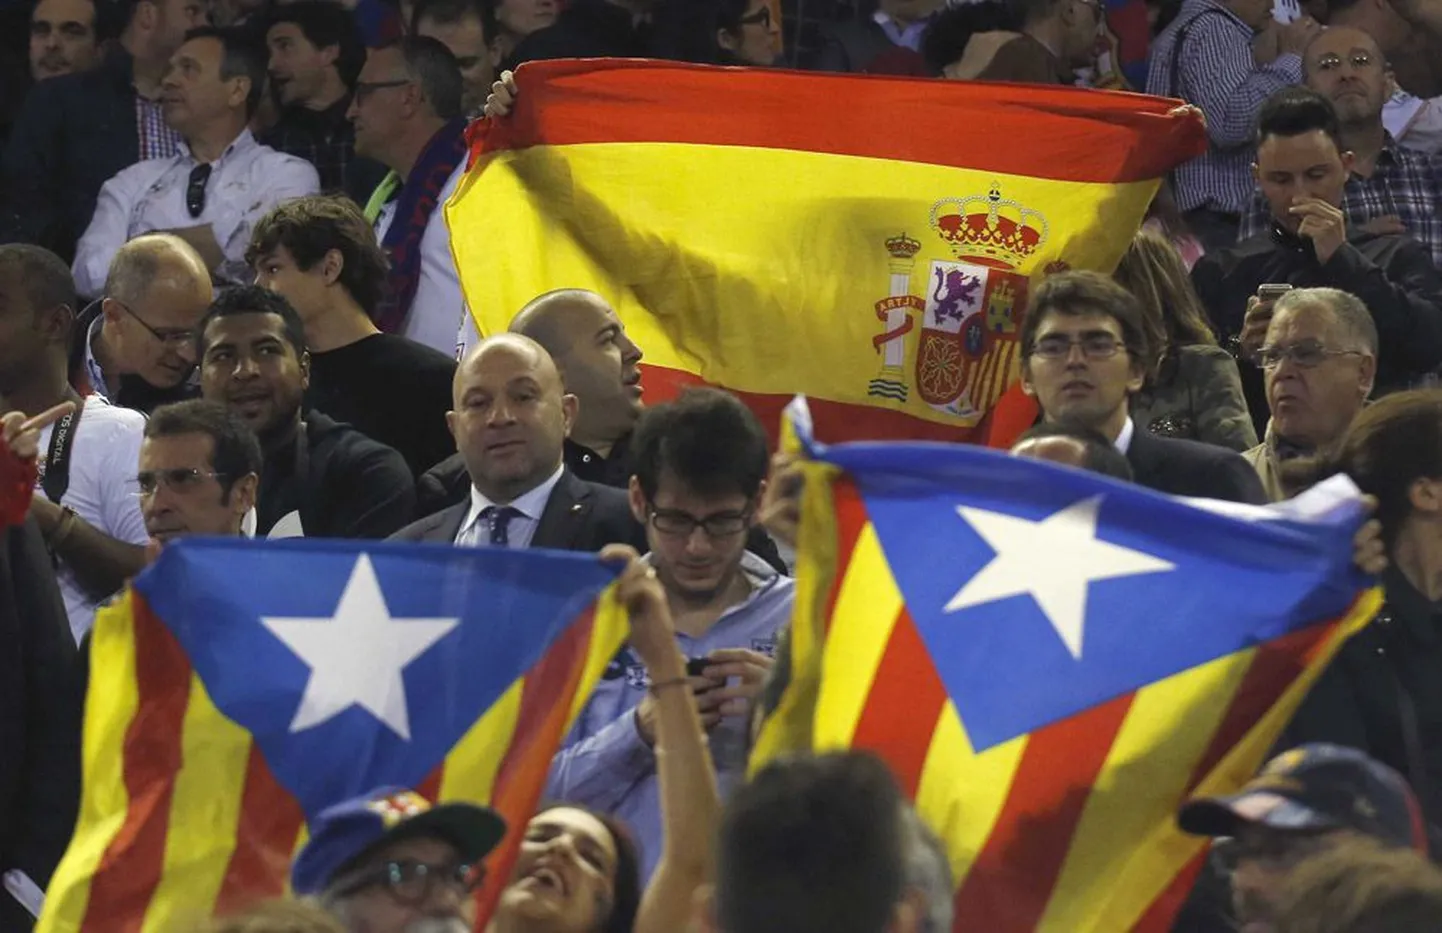 Jalgpallimatšil Madrid vs. Barcelona möödunud nädalal Valencias: Kataloonia klubi fännid tulid välja iseseisvuslaste senyera-lippudega.